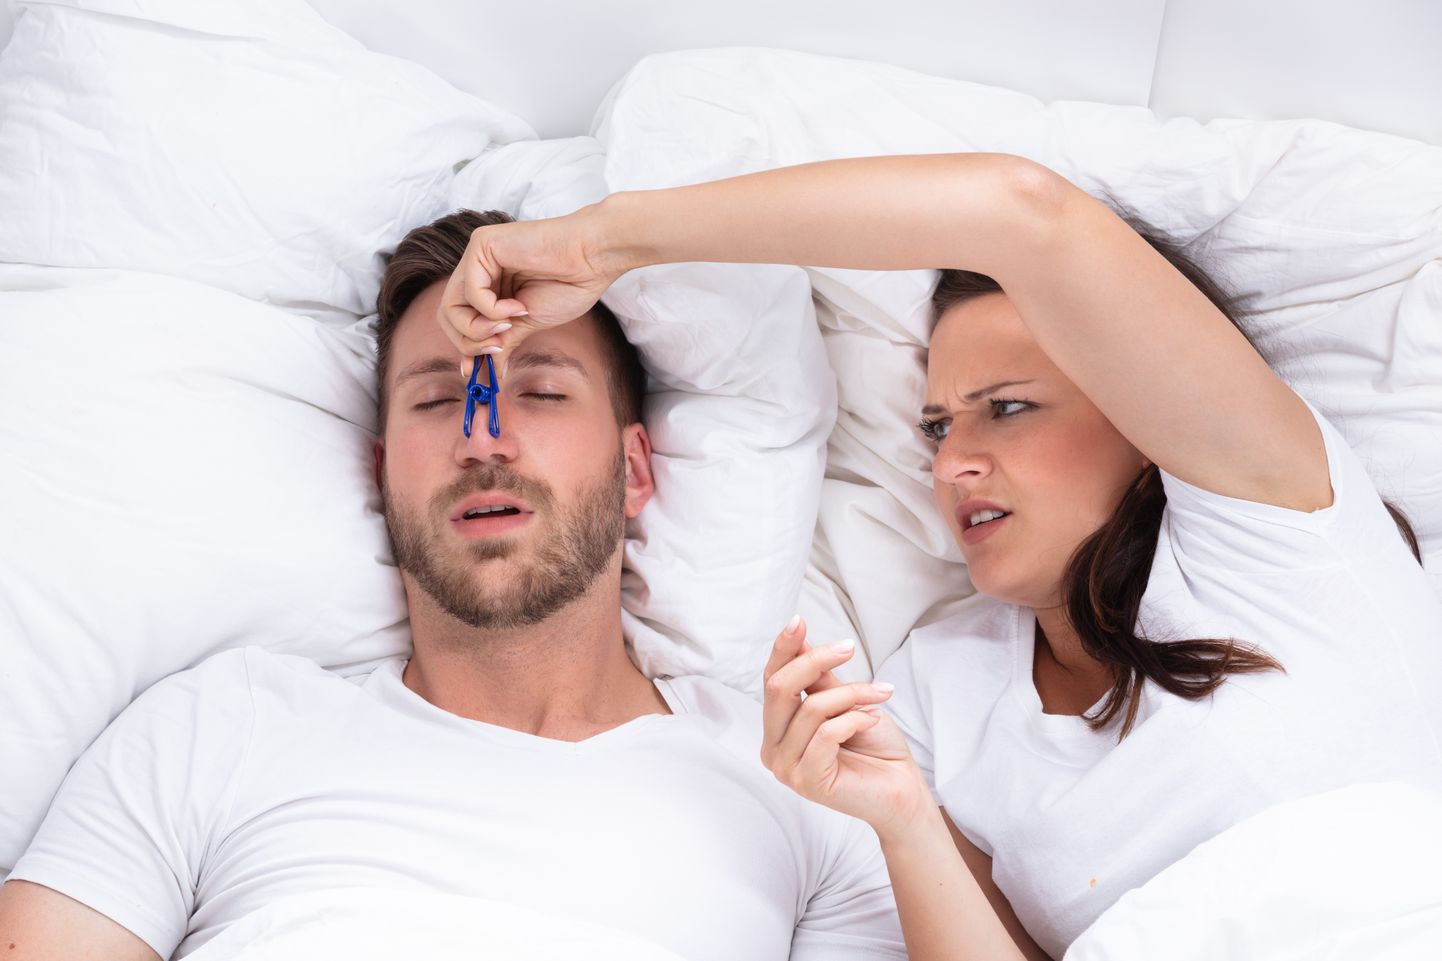 Norskamine võib mõjuda sama halvasti, nagu keegi vajutaks pesulõksuga nina kinni - uneapnoe puhul ei saa inimene magades piisavalt hapnikku.